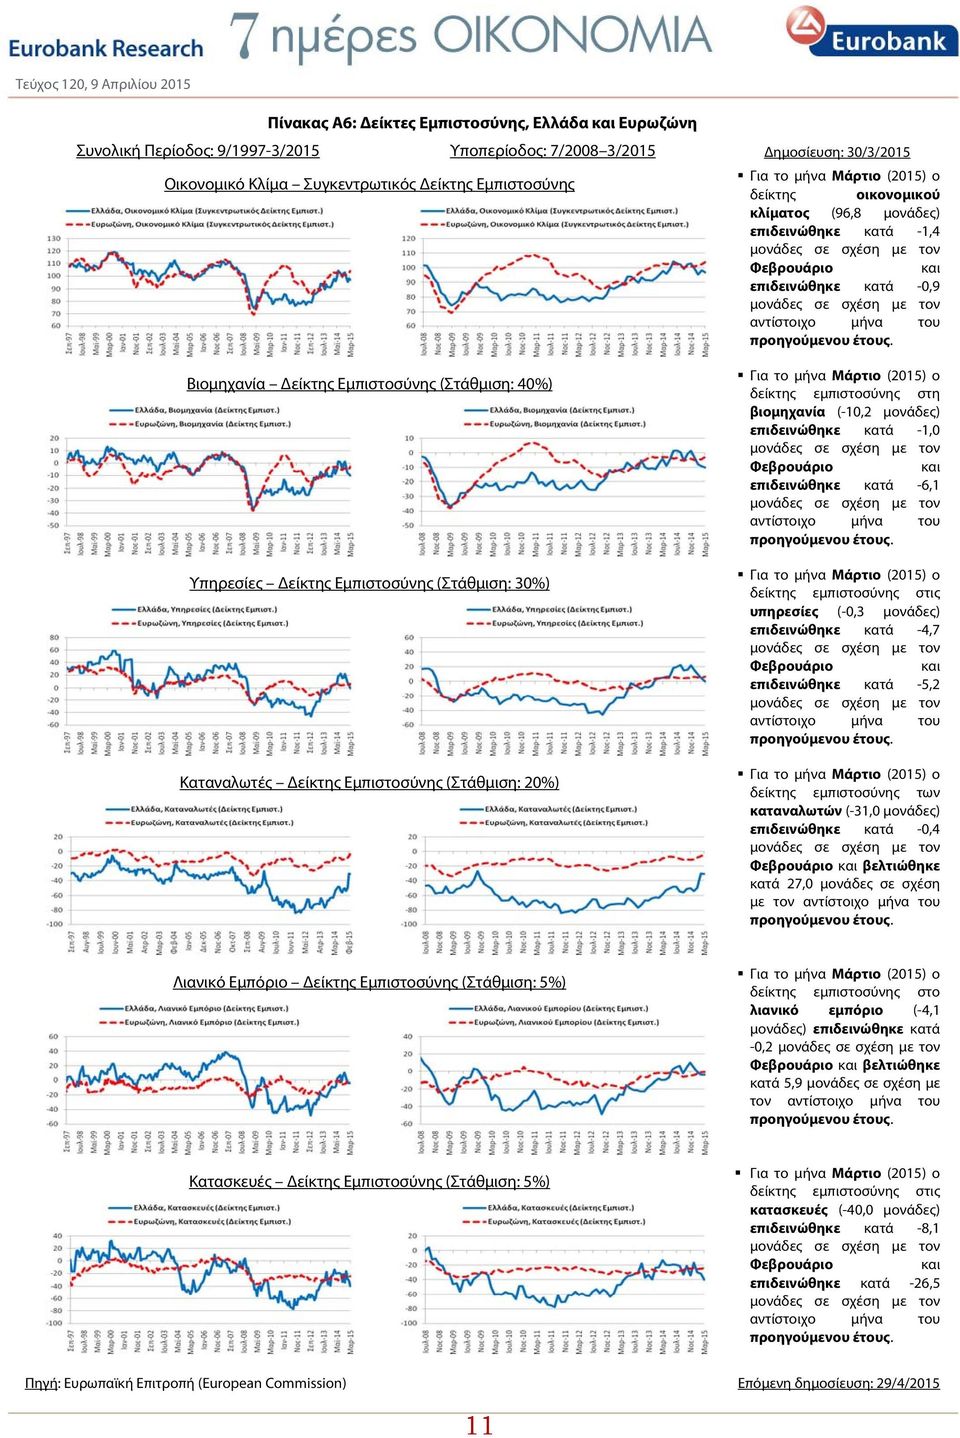 Βιομηχανία Δείκτης Εμπιστοσύνης (Στάθμιση: 40%) Υπηρεσίες Δείκτης Εμπιστοσύνης (Στάθμιση: 30%) Καταναλωτές Δείκτης Εμπιστοσύνης (Στάθμιση: 20%) Για το μήνα Μάρτιο (2015) ο δείκτης εμπιστοσύνης στη